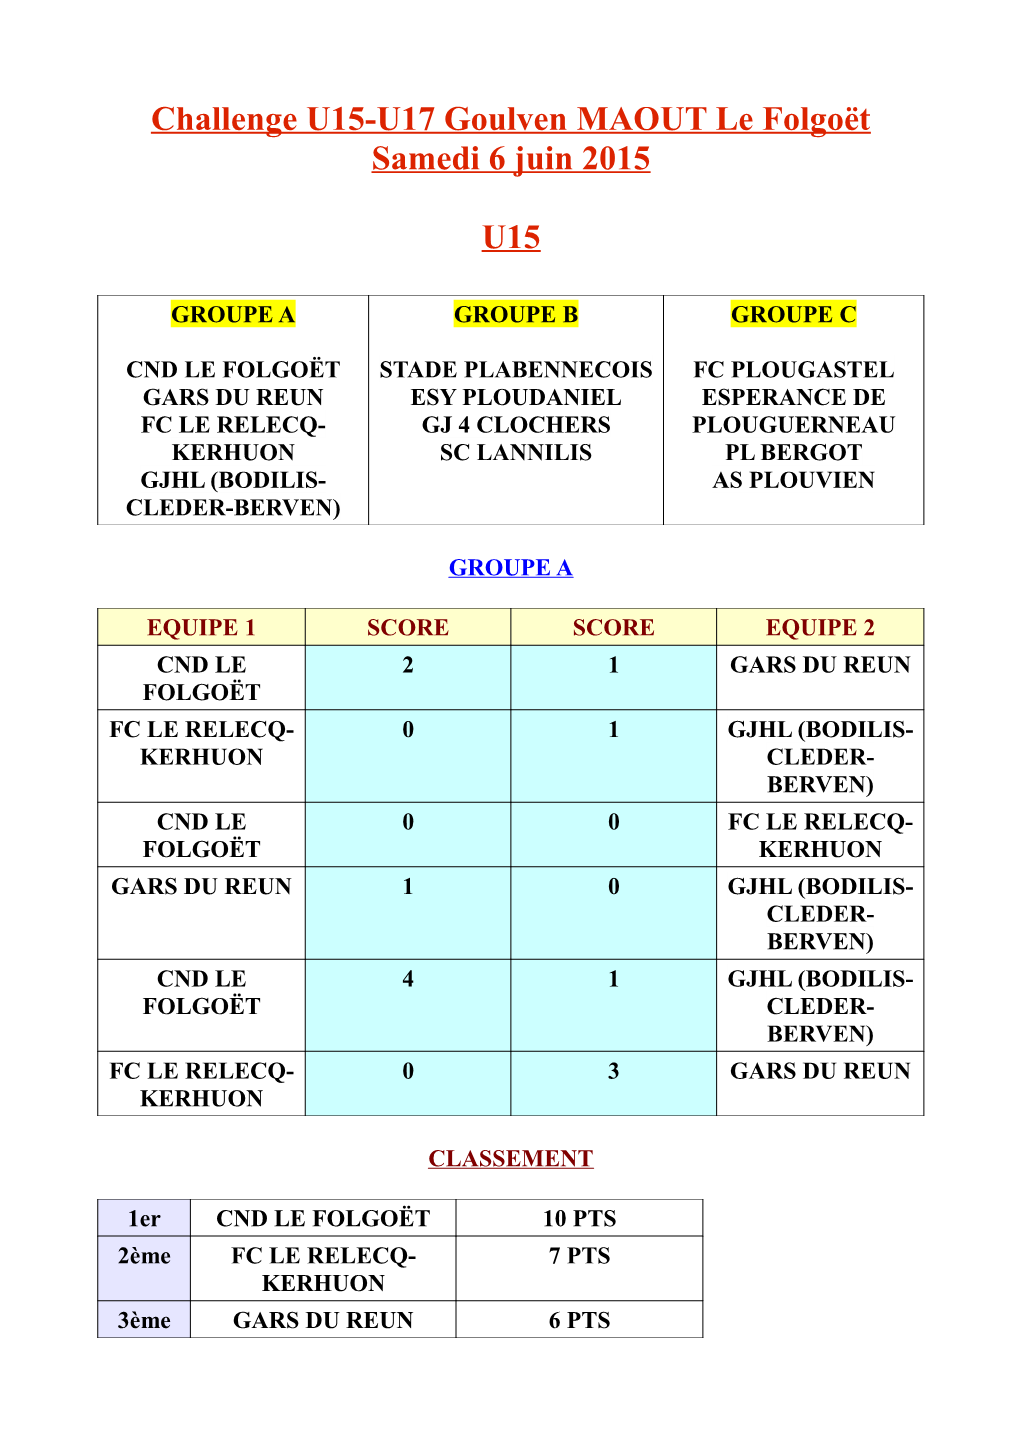 Challenge U15-U17 Goulven MAOUT Le Folgoët Samedi 6 Juin 2015